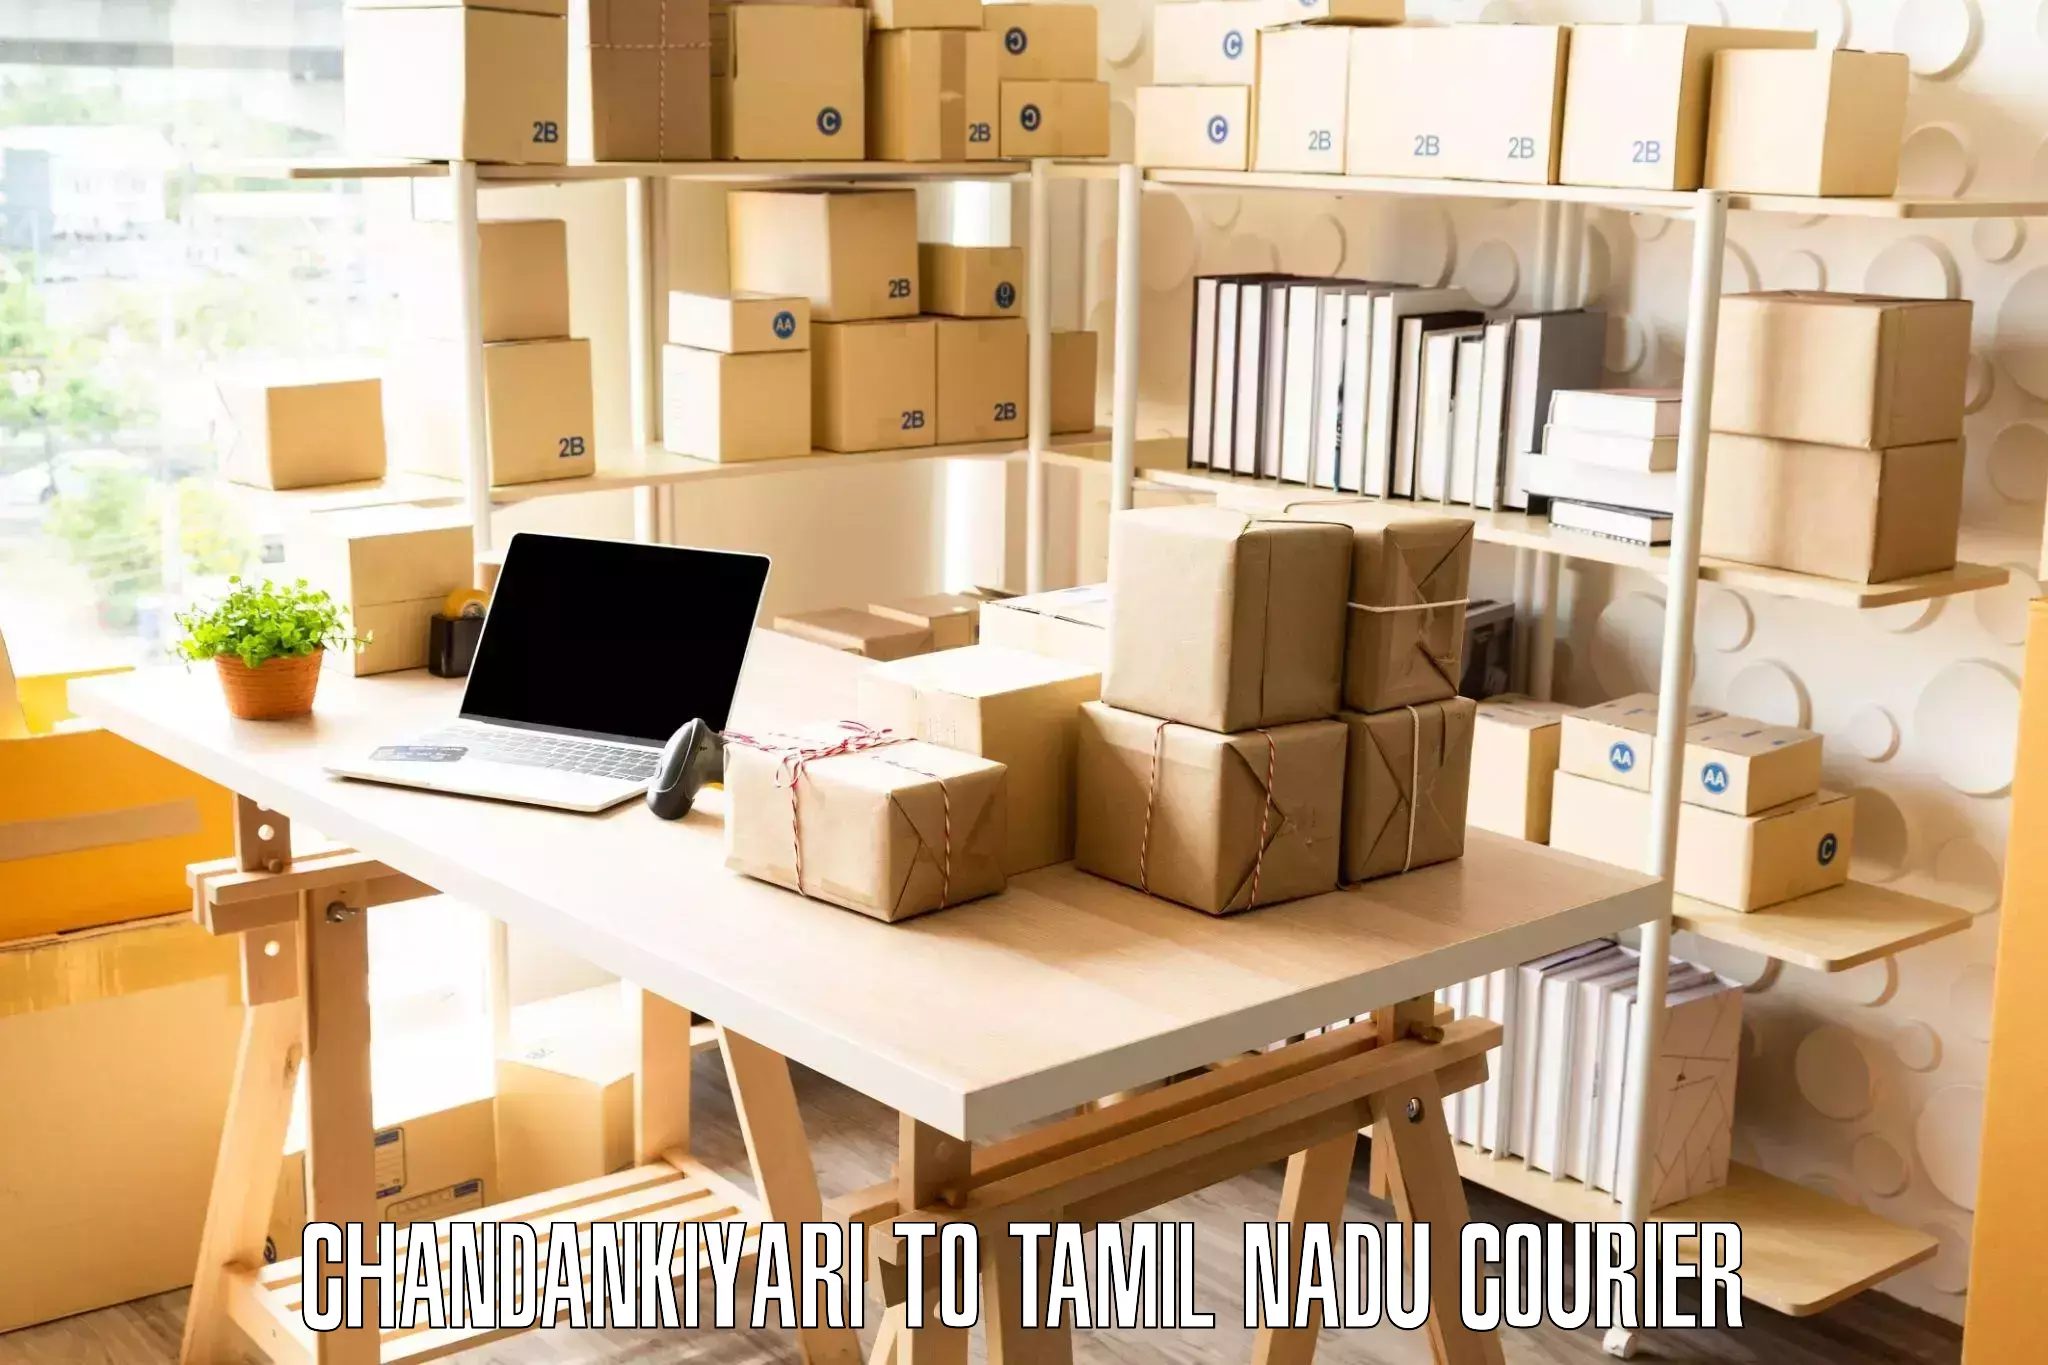 Home furniture relocation Chandankiyari to Viralimalai